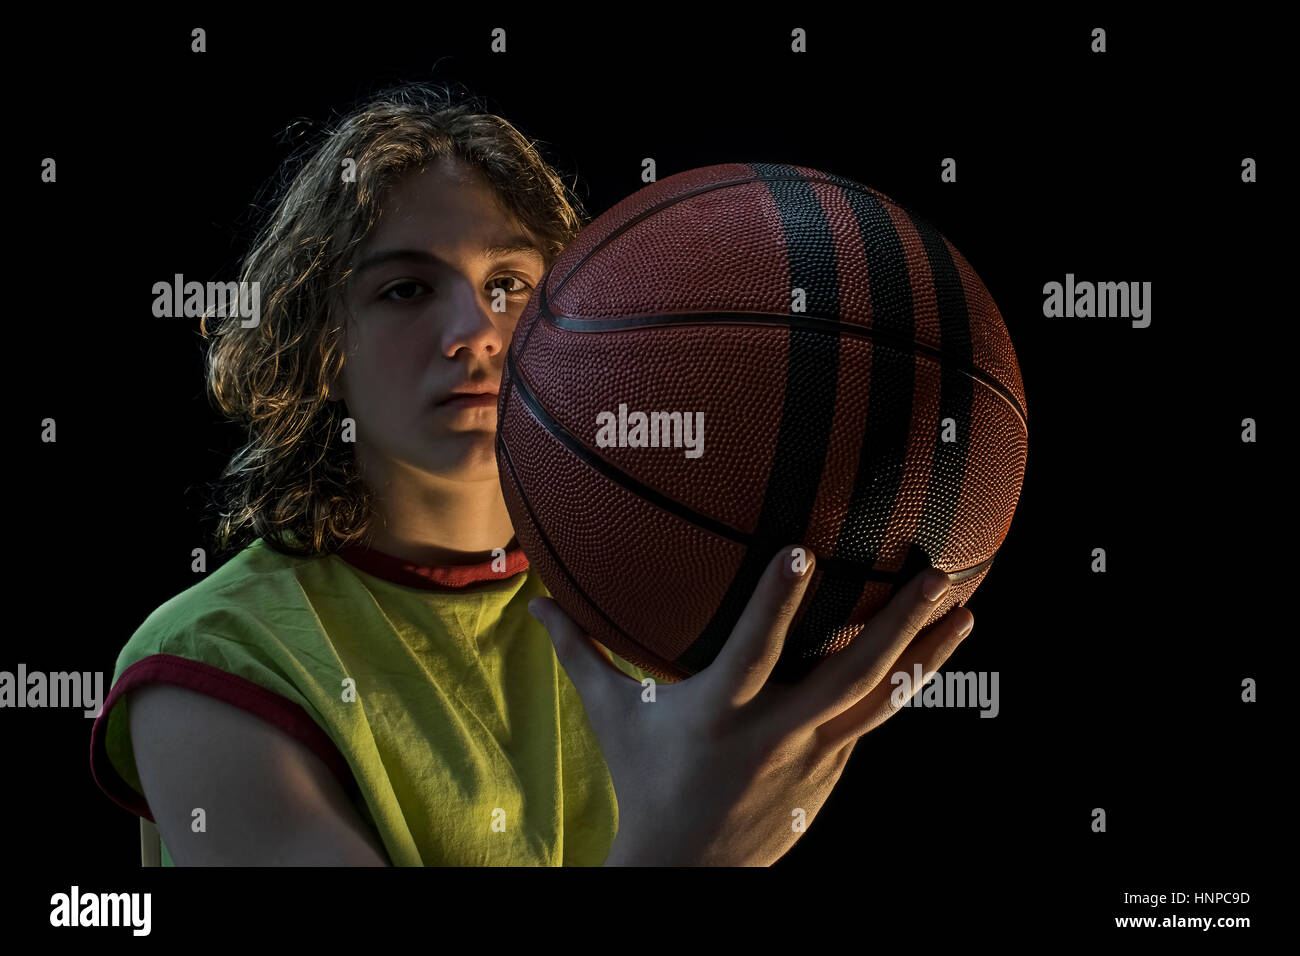 Nahaufnahme eines kleinen Jungen mit langen blonden Haaren, die mit einem grünen Trikot hält einen Basketball in die Kamera schaut. Stockfoto